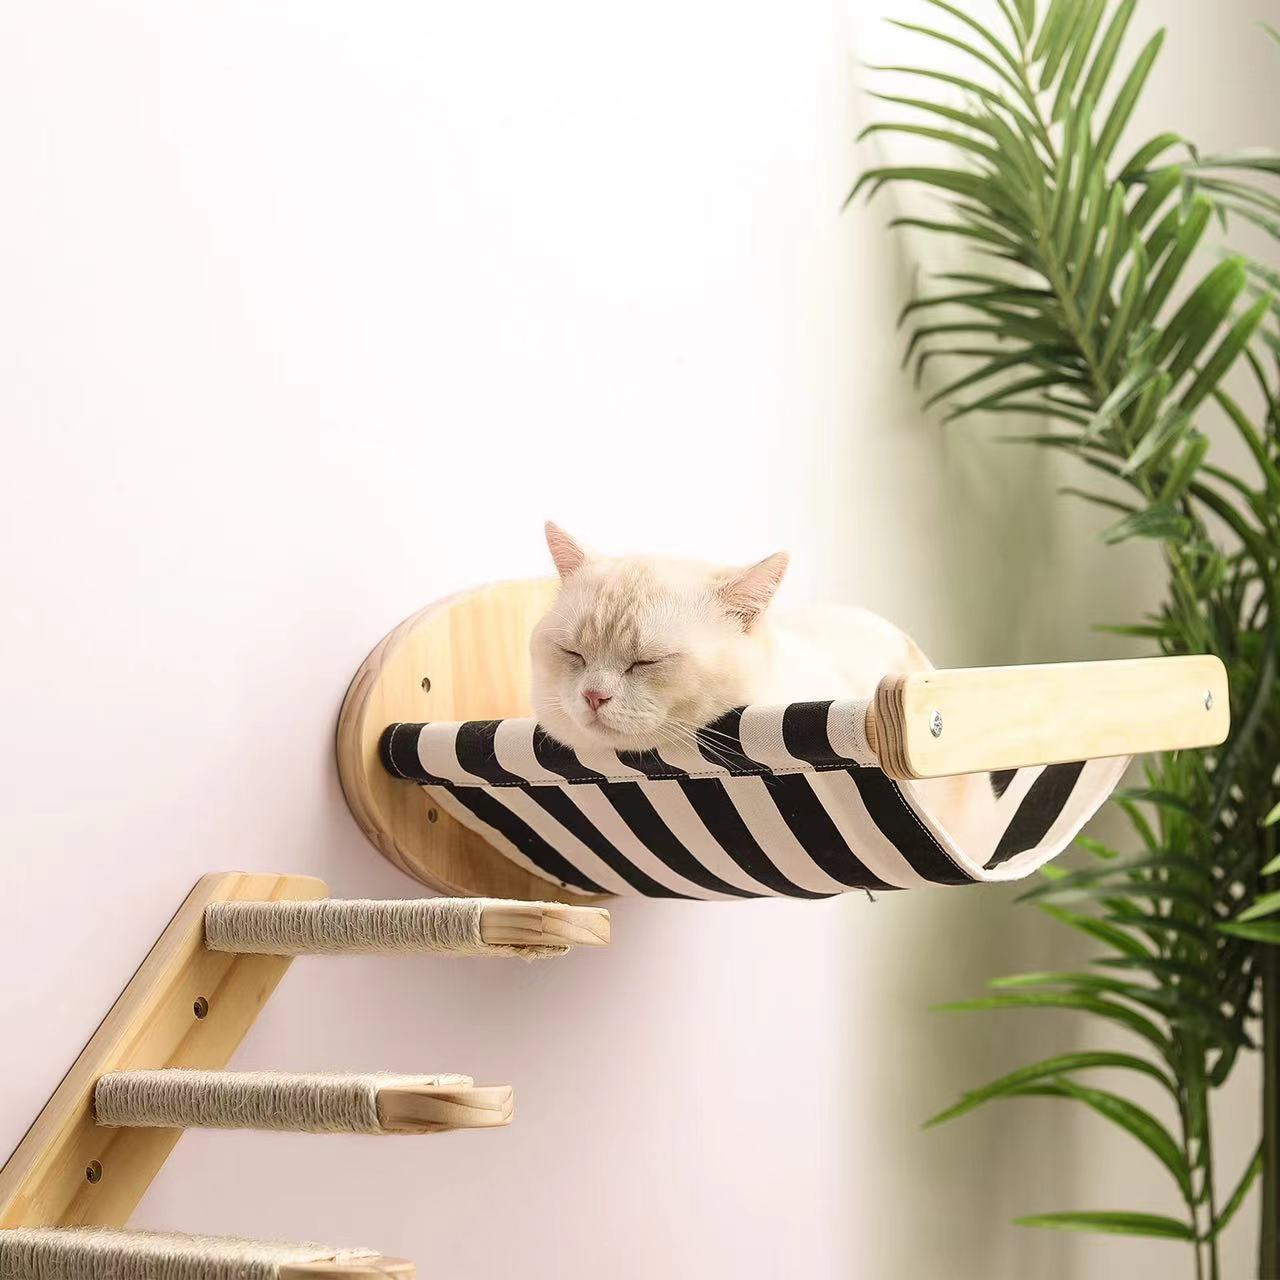 DIY猫吊床猫墙壁悬挂式猫抓柱楼梯房字太空舱猫玩具猫爬架帆布窝